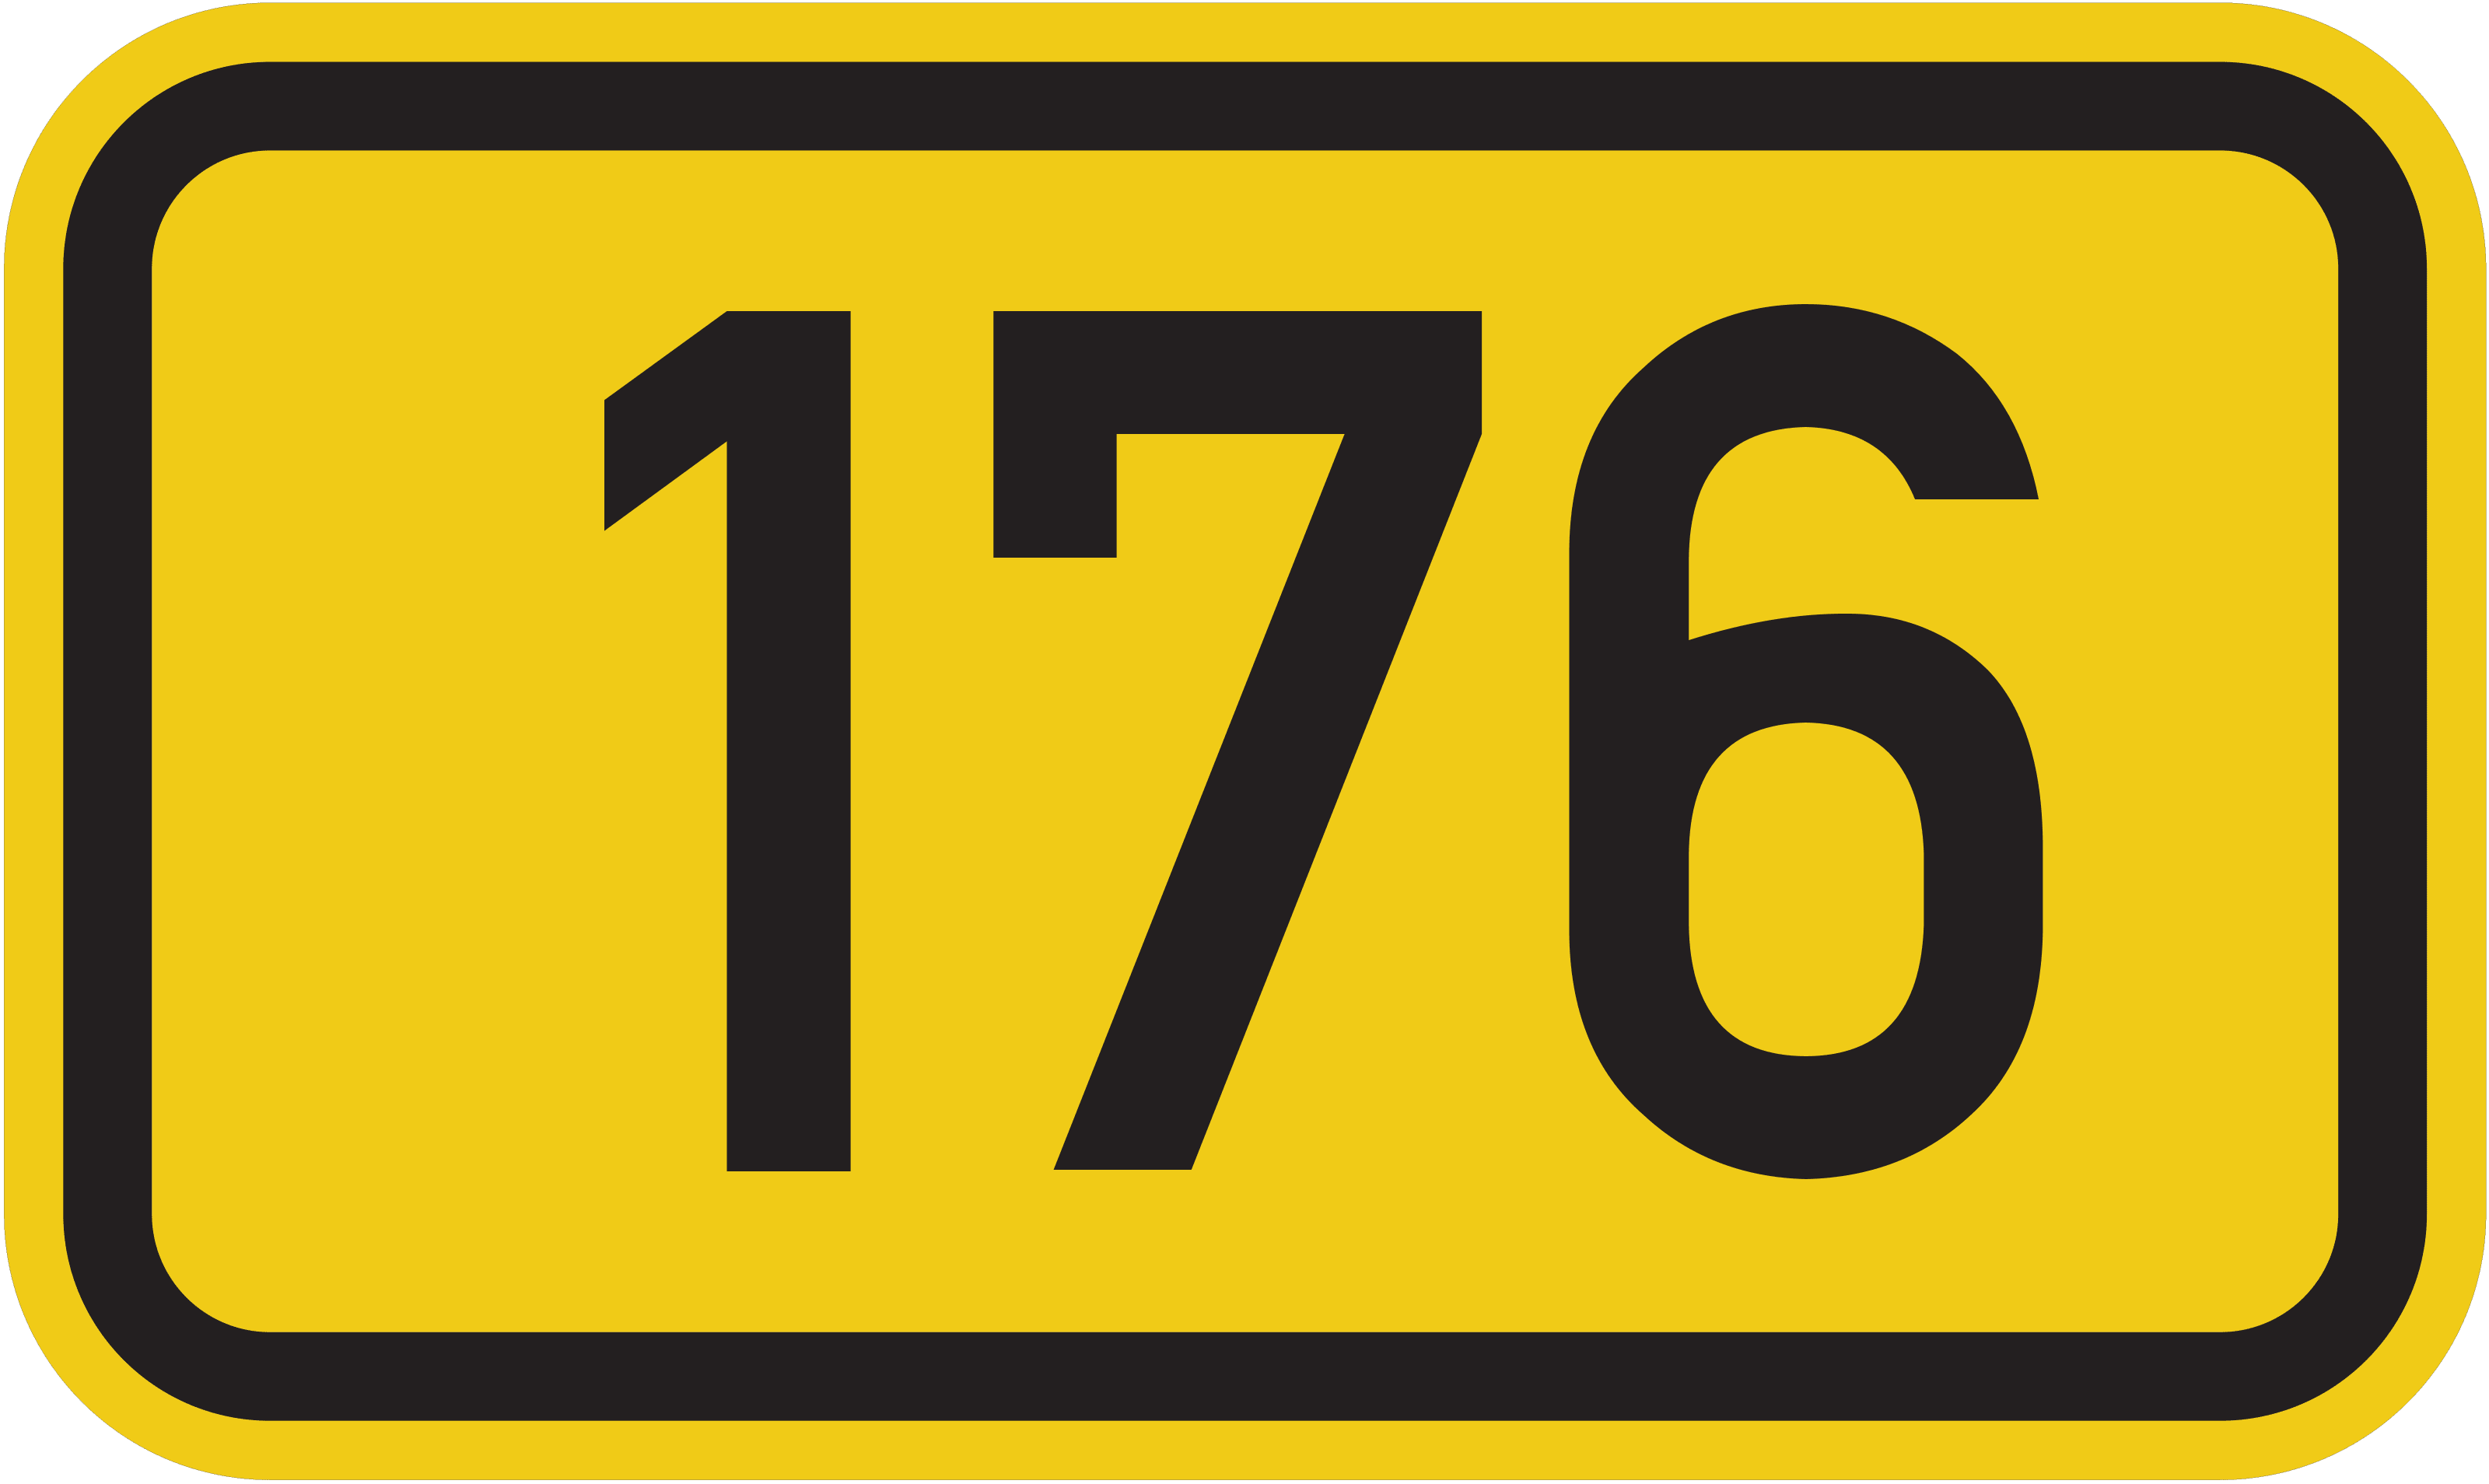 Bundesstraße B 176